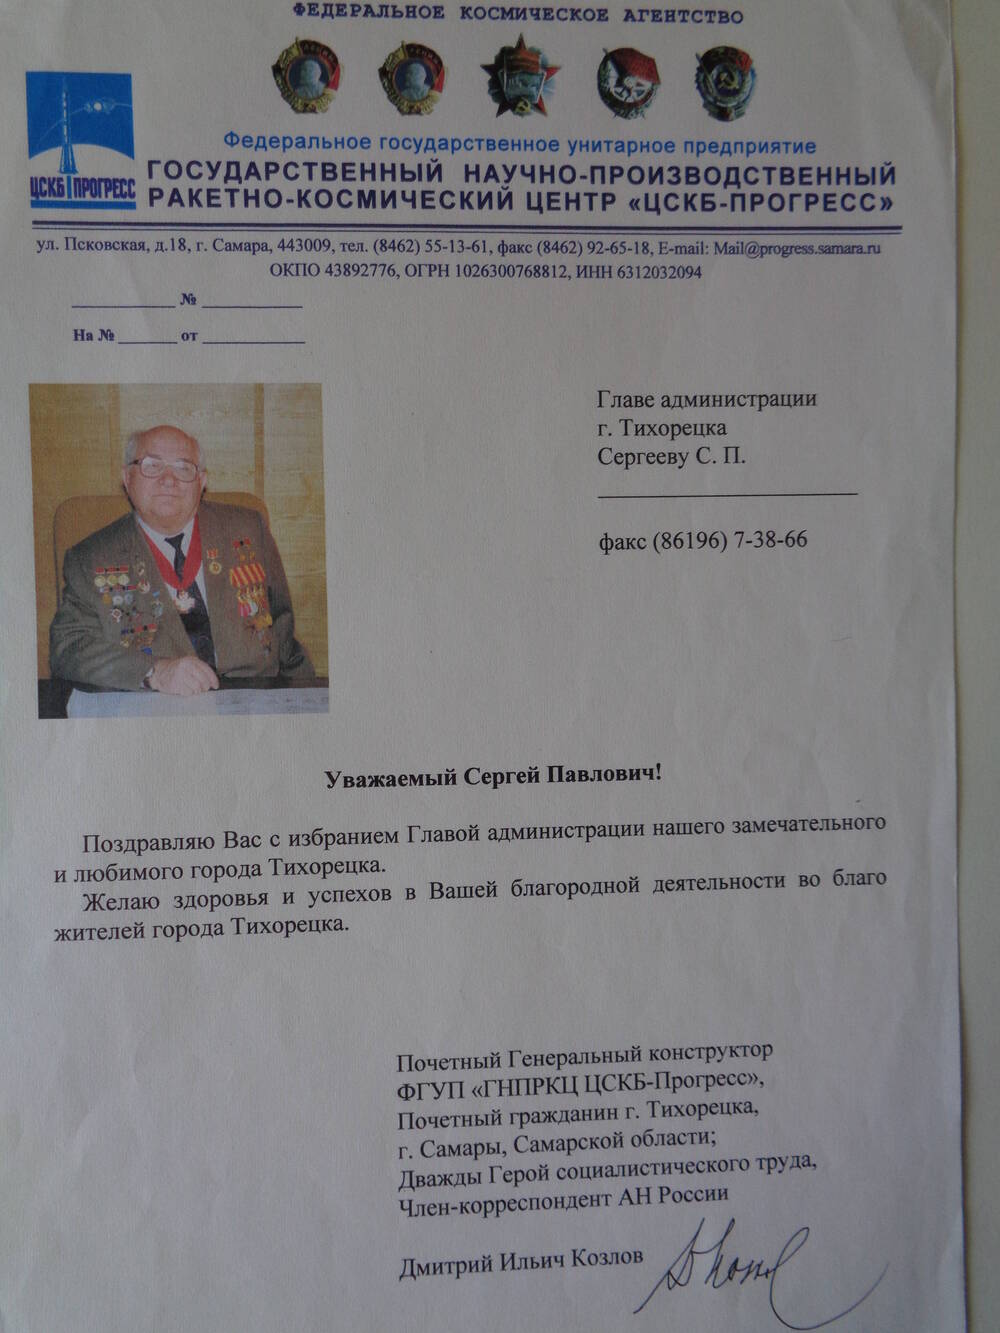 Письмо поздравительное С.П.Сергееву - главе администрации г.Тихорецка от Д.И.Козлова.